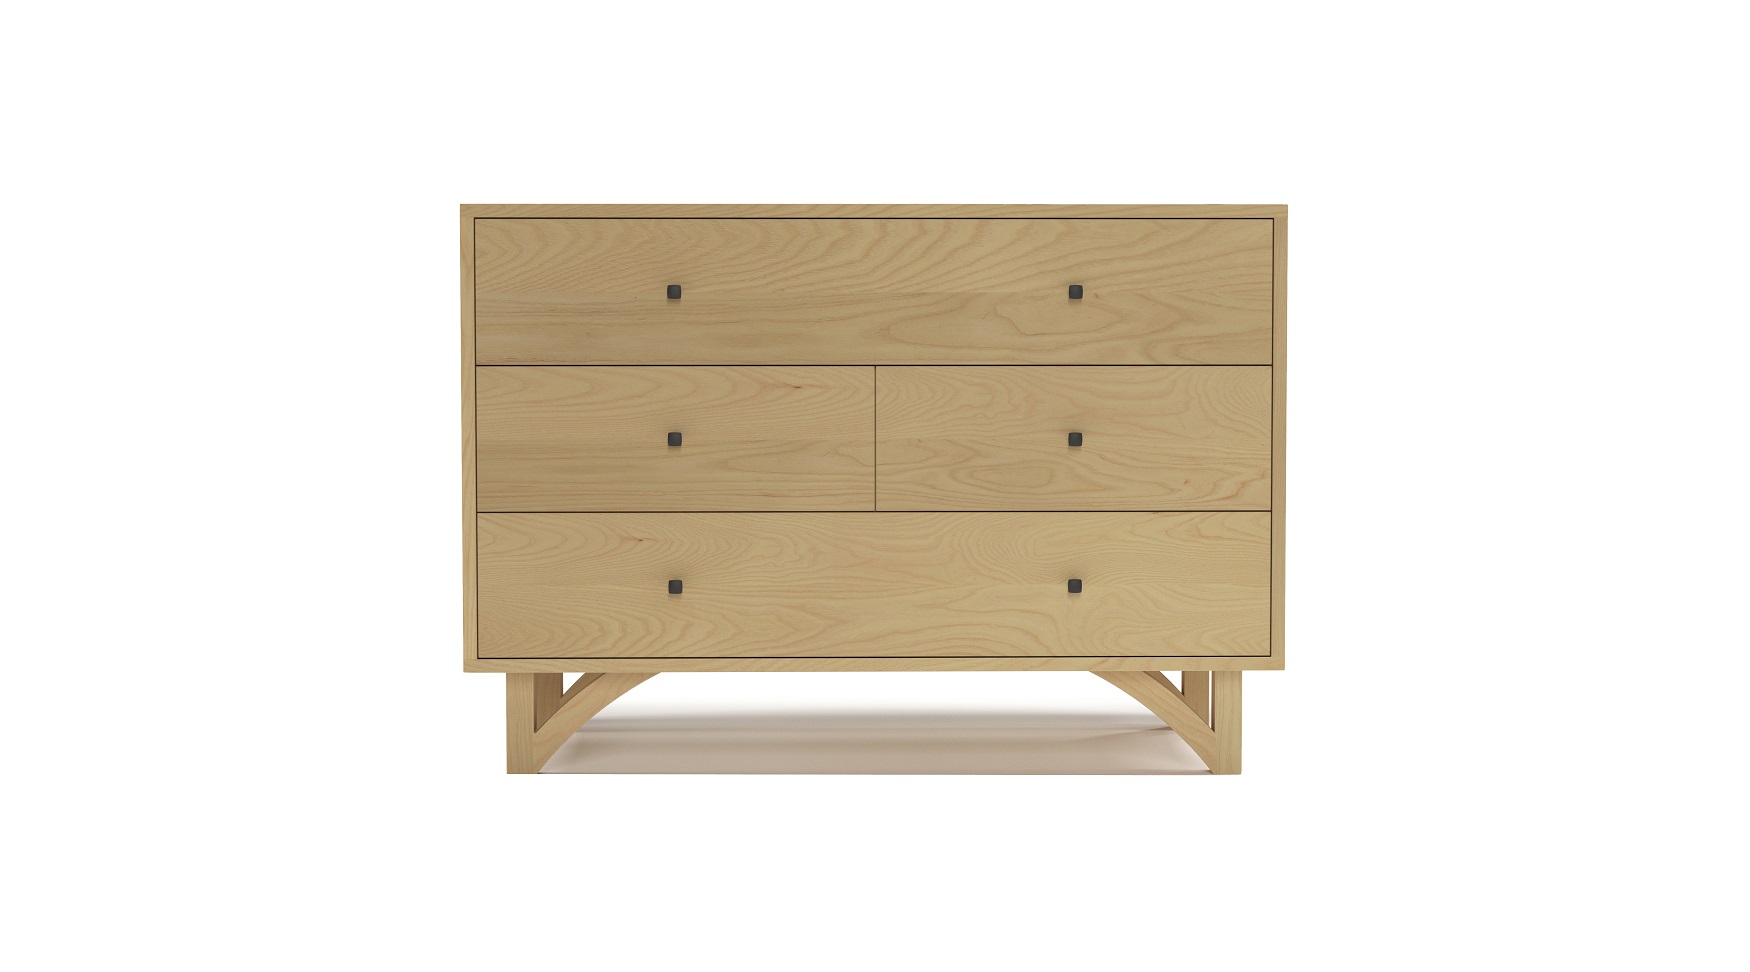 Solid ash 42" modern four drawer dresser with custom hand cut legs